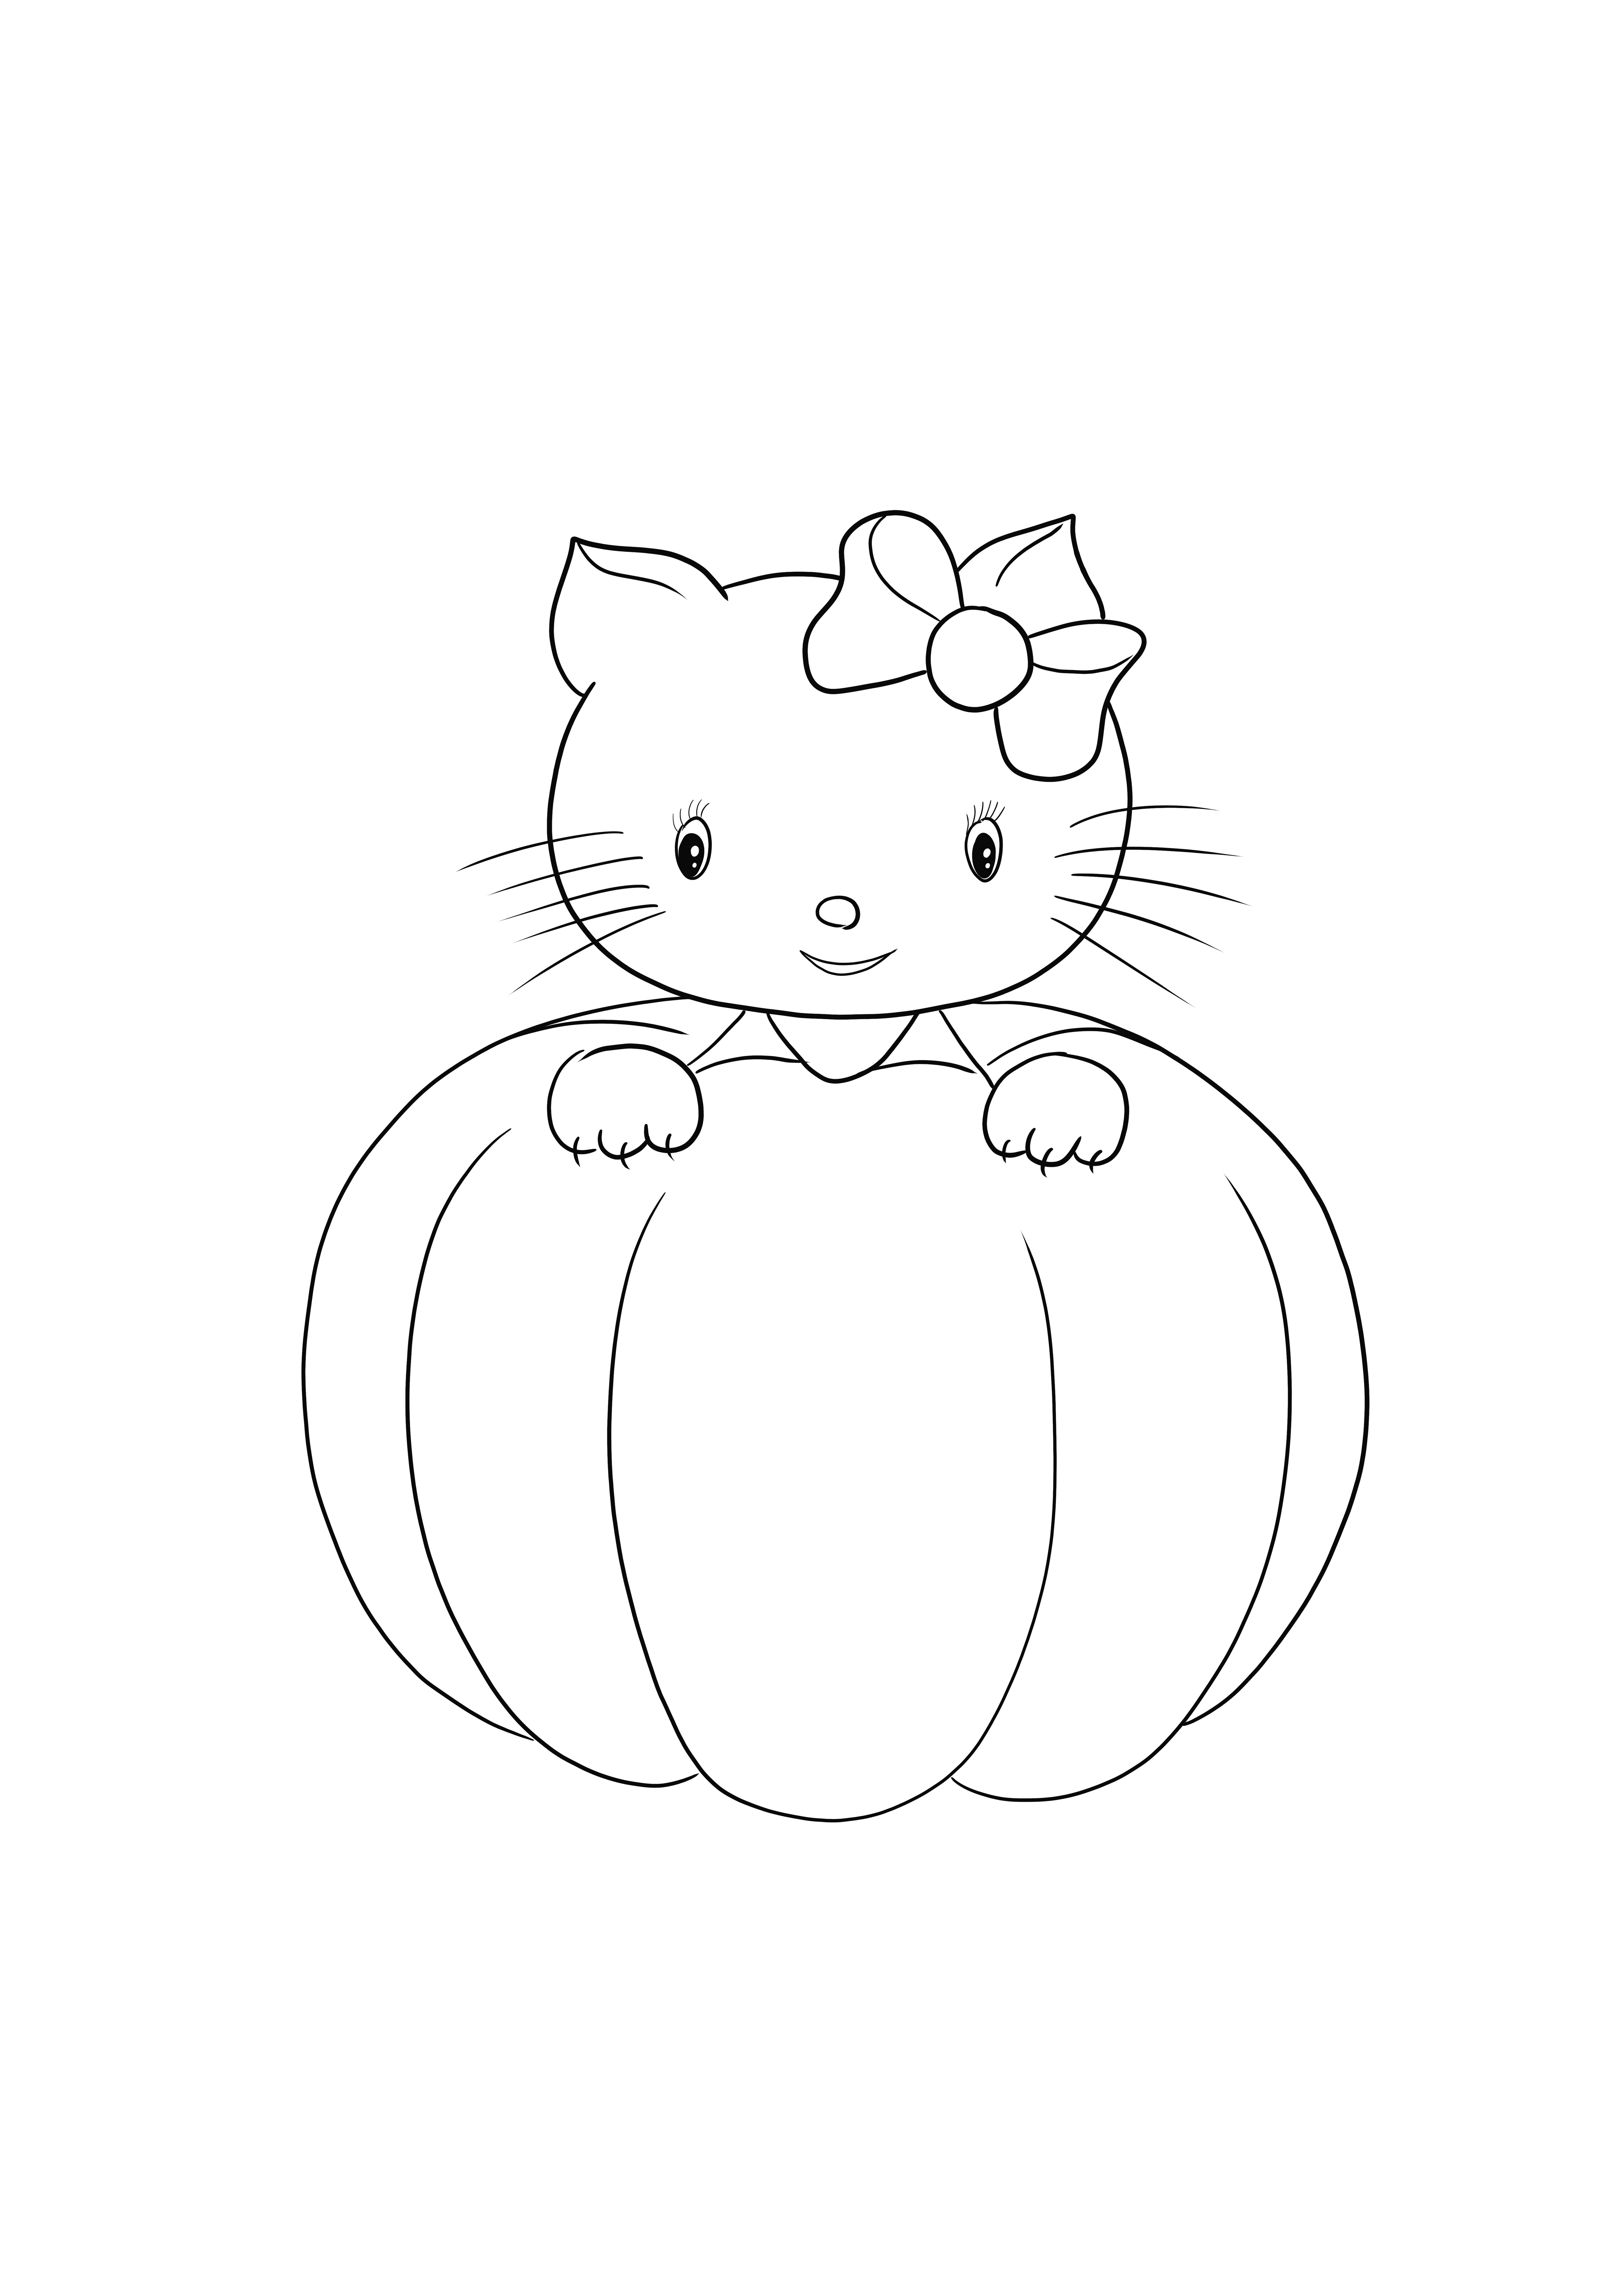 A Hello Kitty Halloween egyszerű és ingyenesen színezhető vagy későbbre menthető